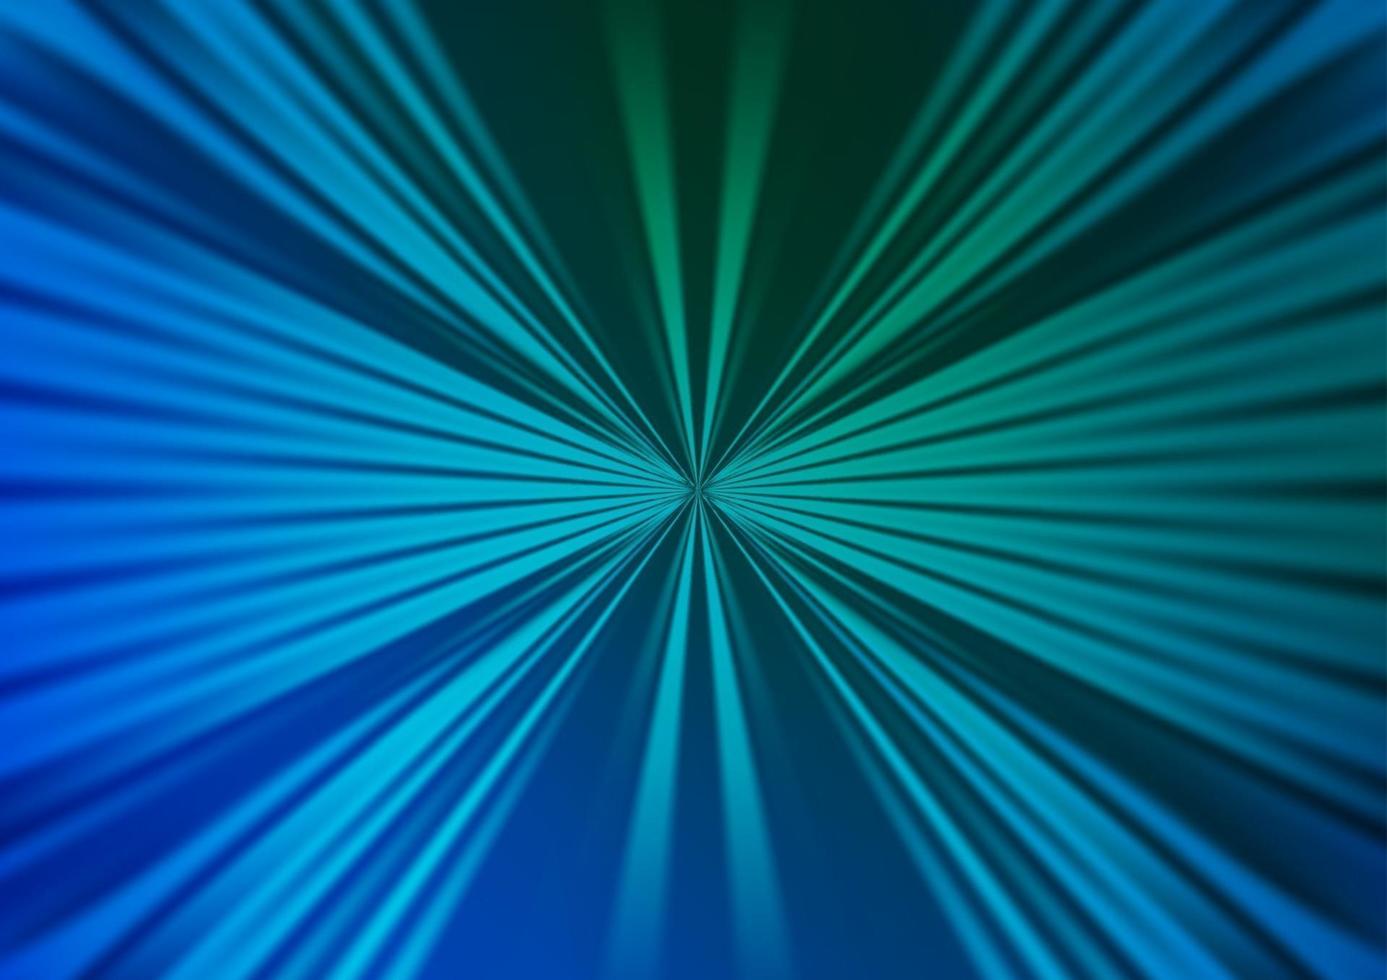 sfondo vettoriale azzurro, verde con lunghe linee.